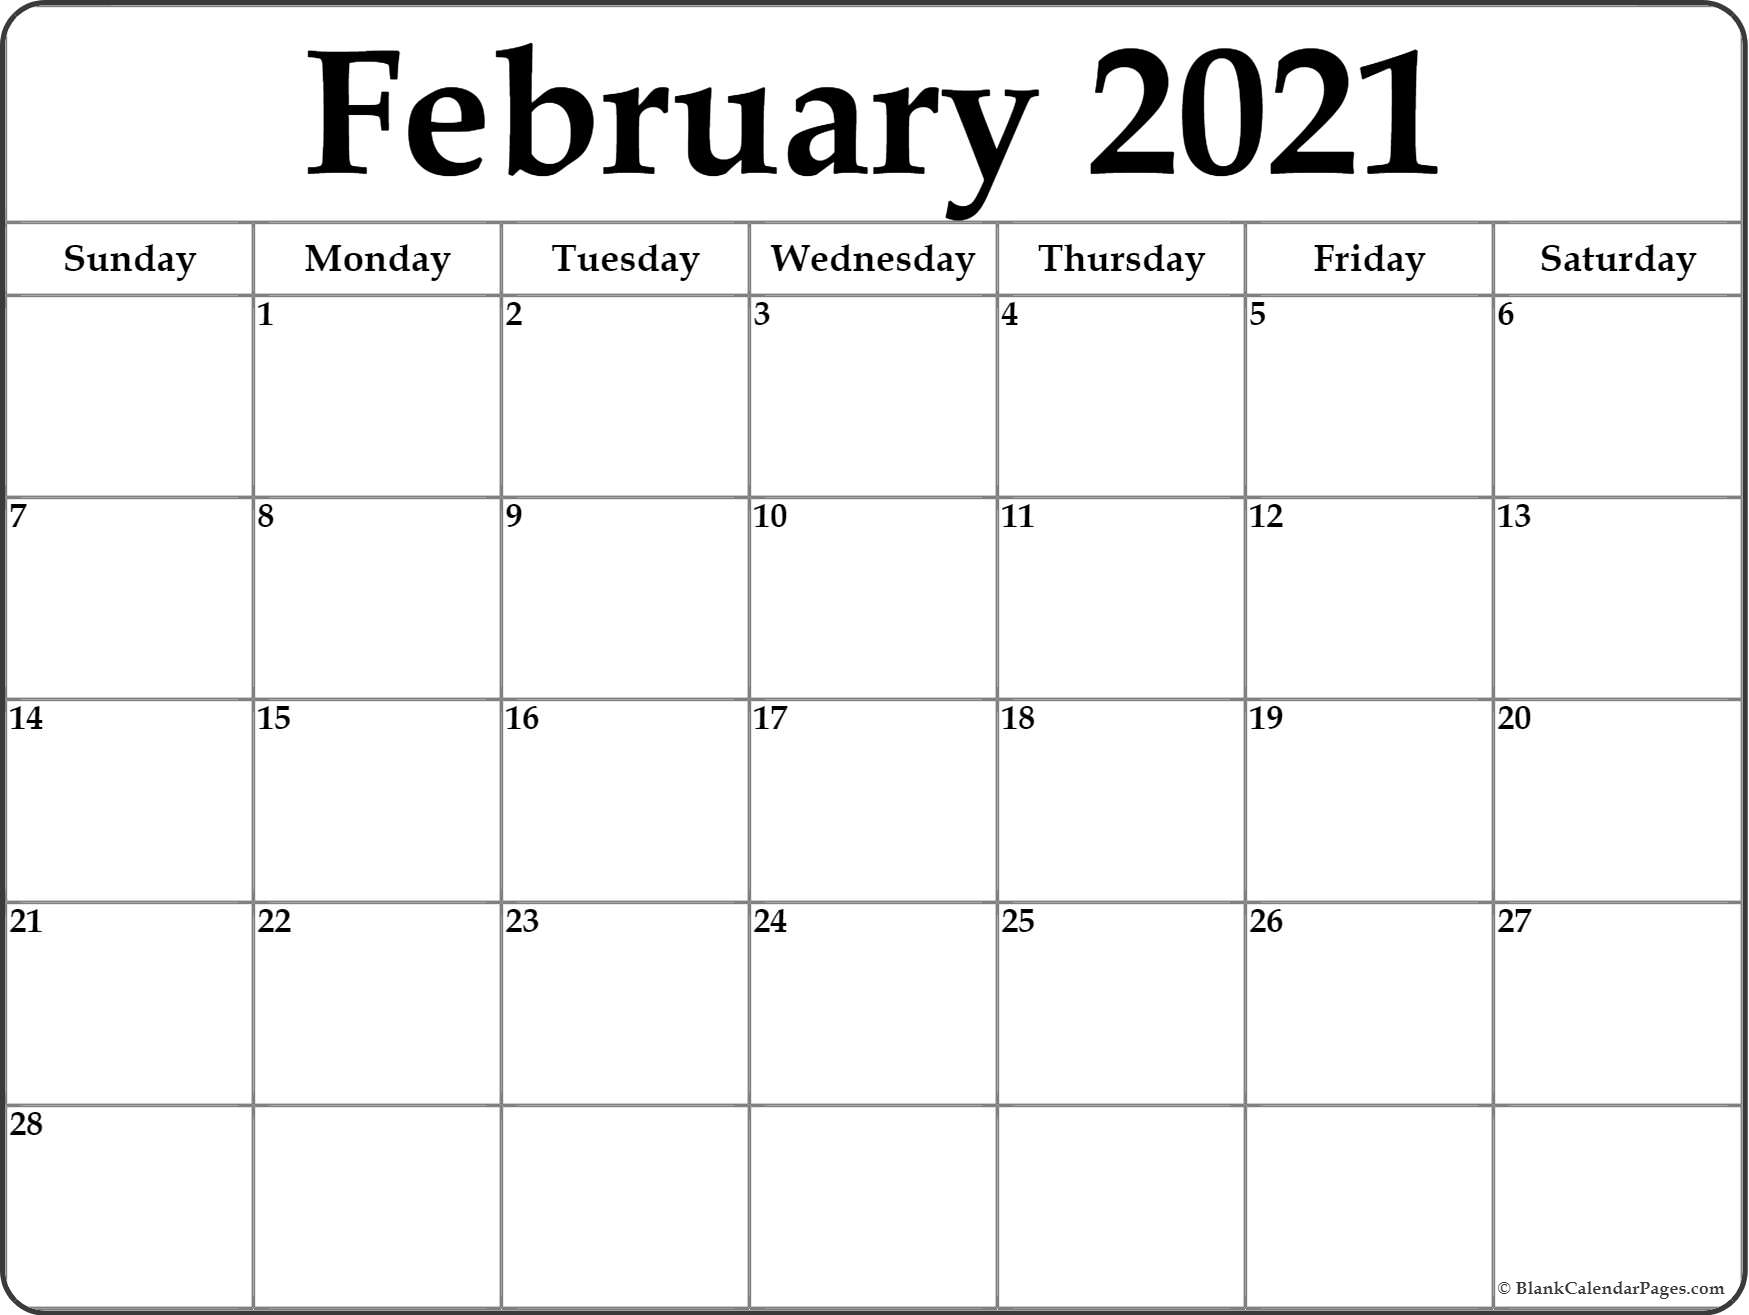 February 2021 Calendar | Free Printable Calendar Templates